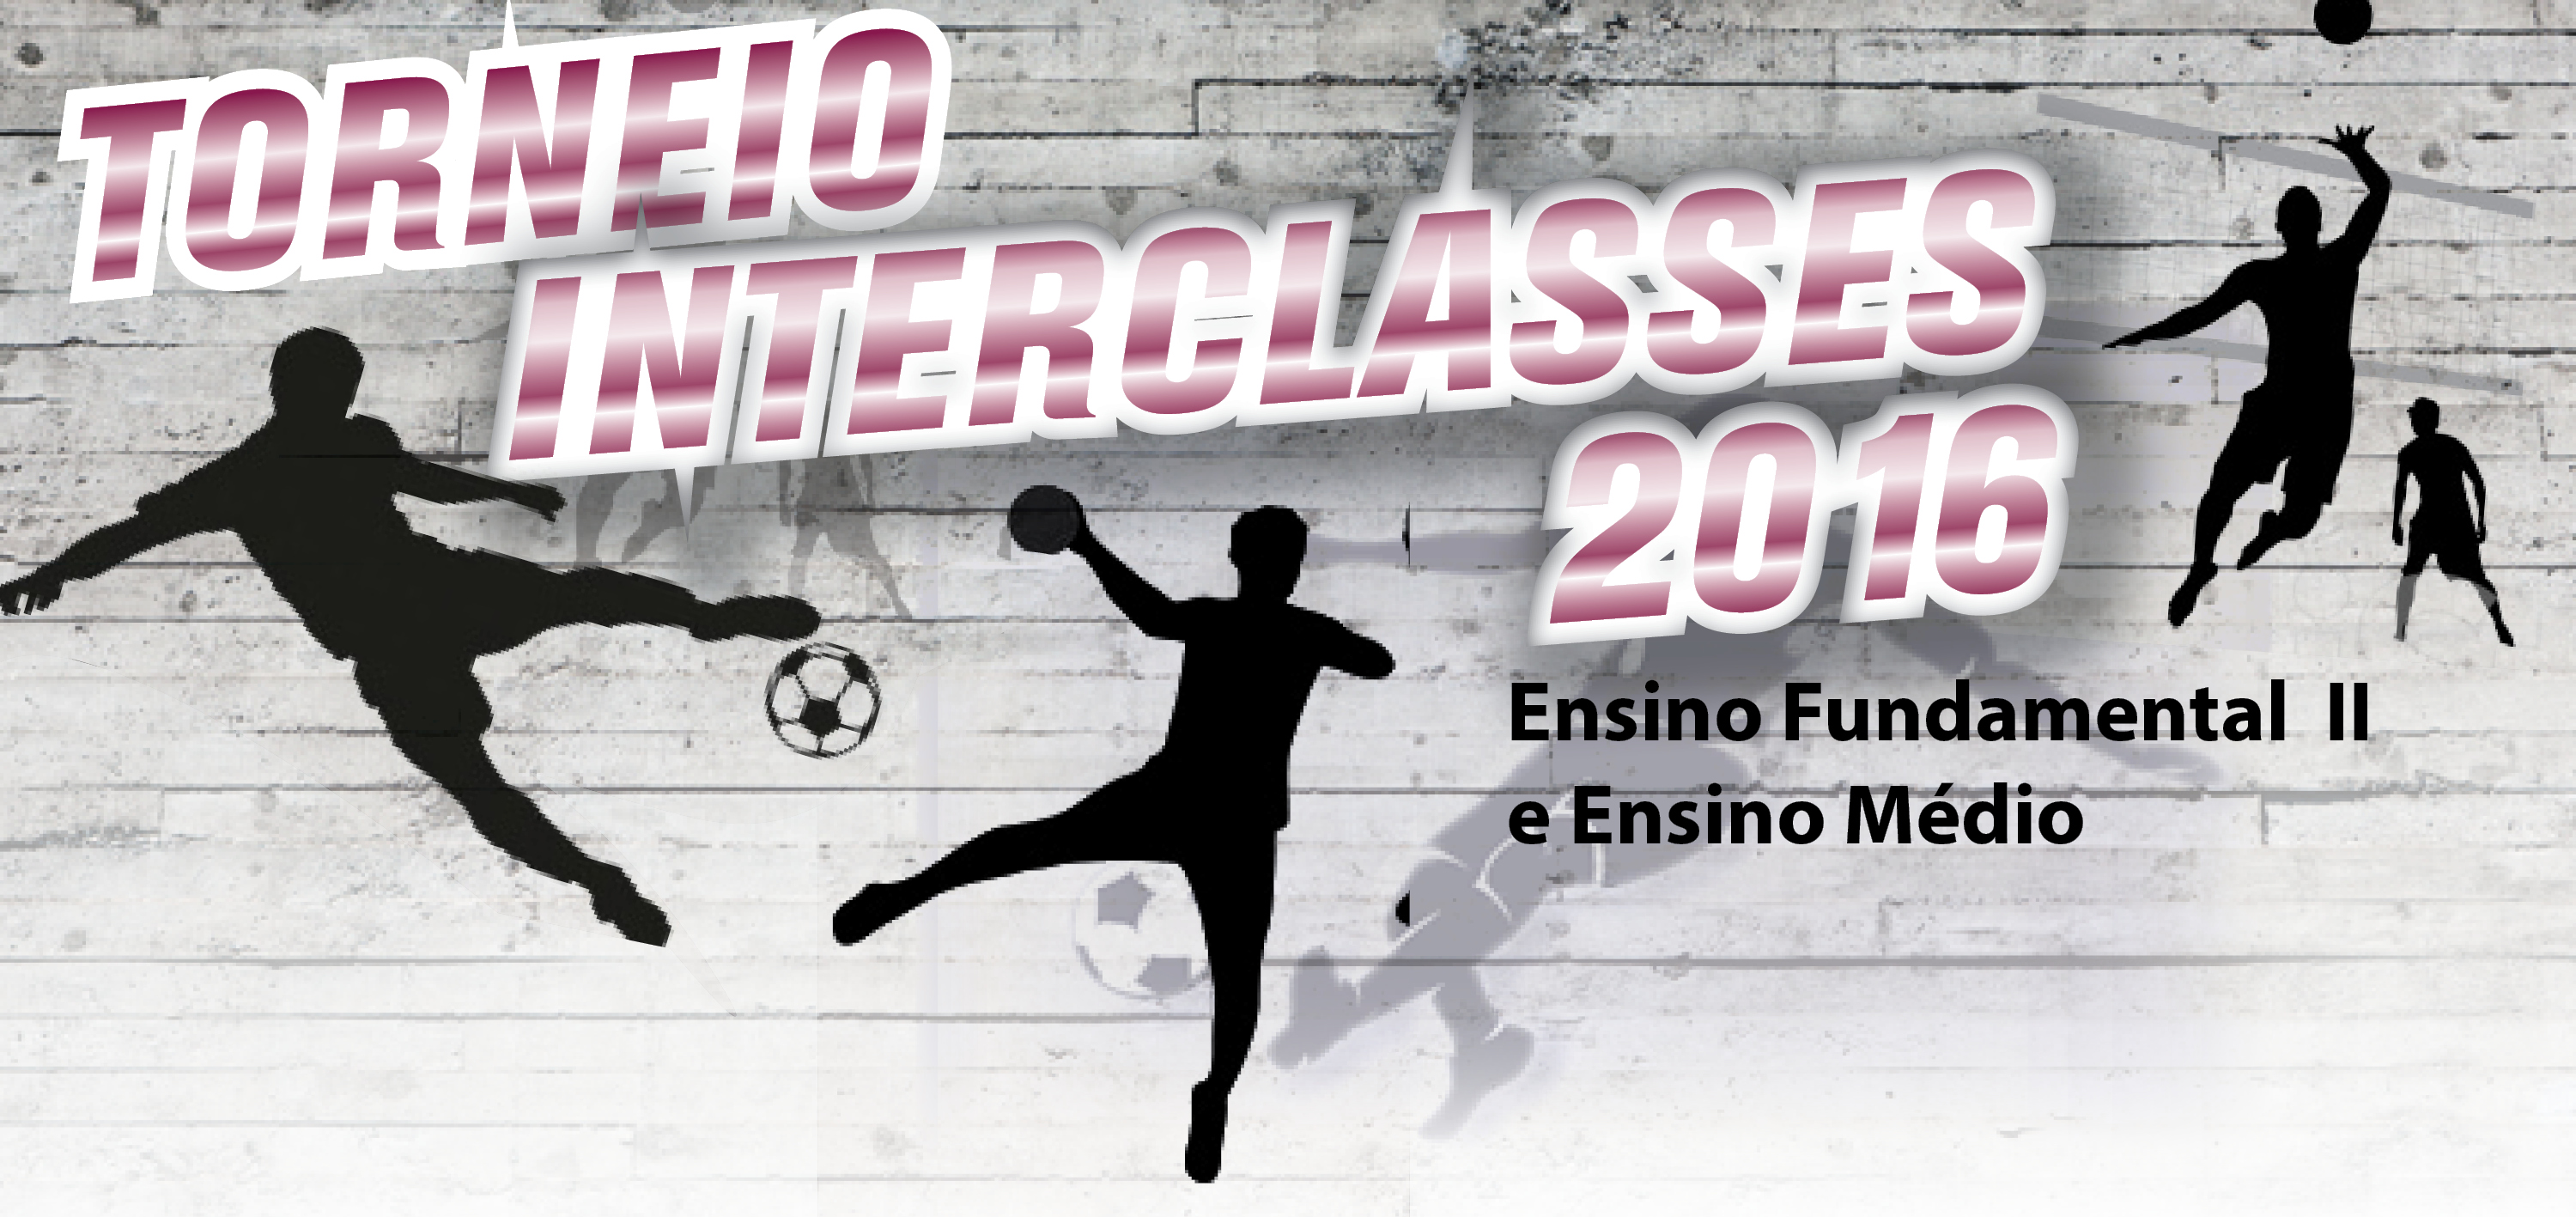 Torneio Interclasses de Futsal Masculino